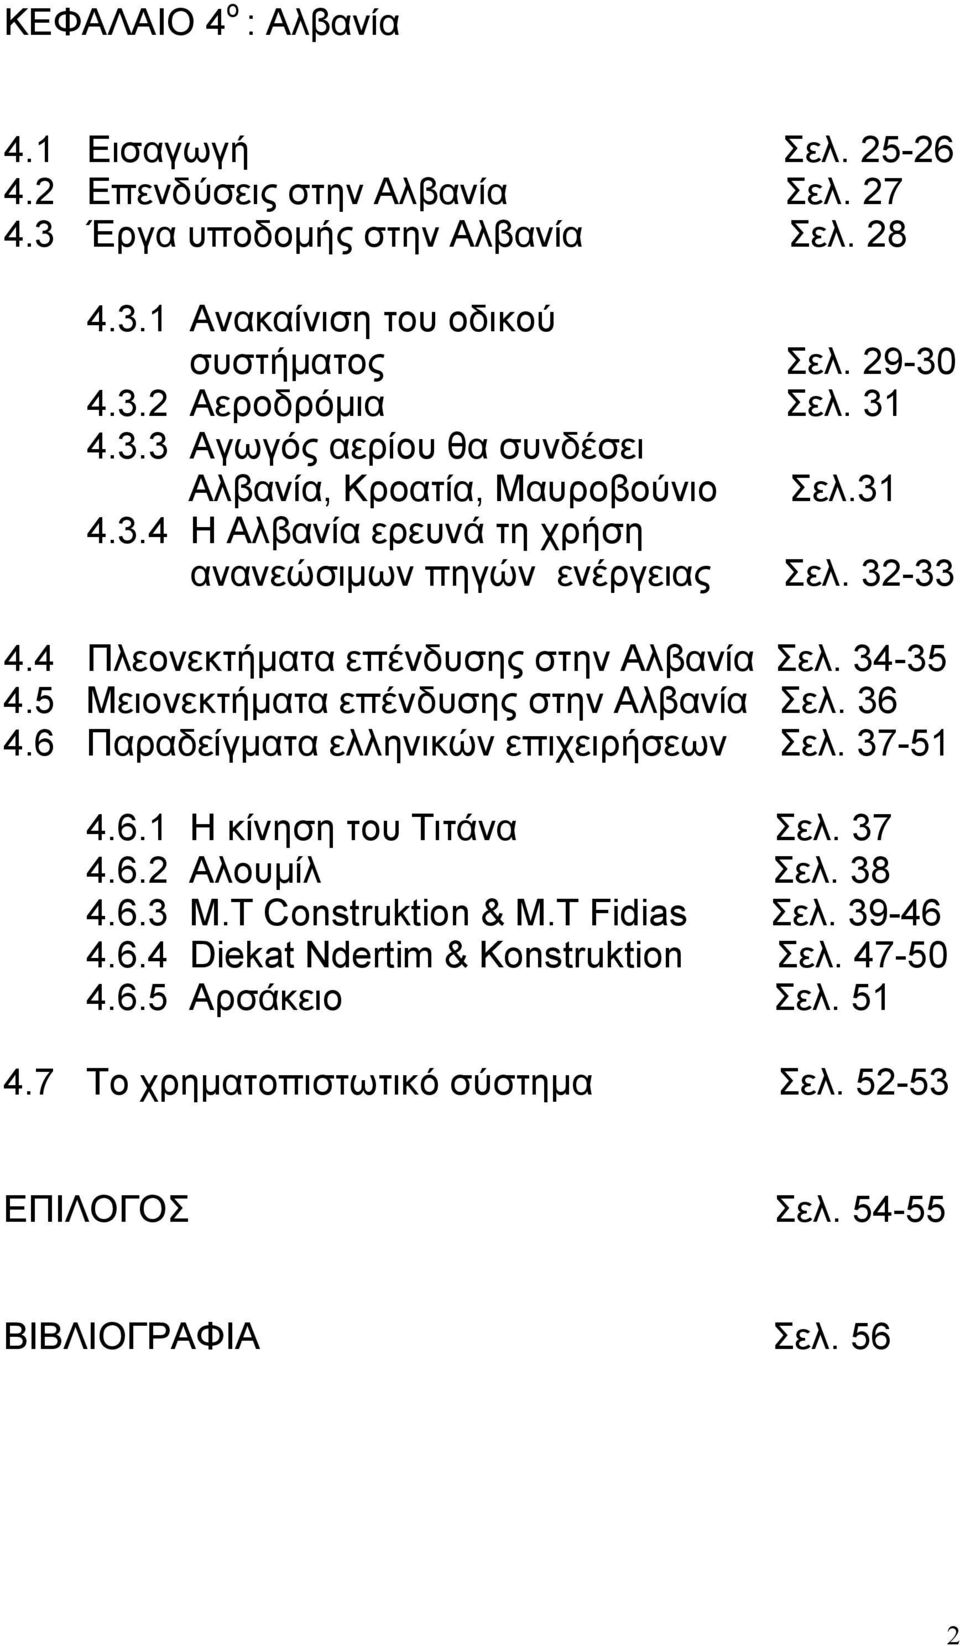 4 Πλεονεκτήματα επένδυσης στην Αλβανία Σελ. 34-35 4.5 Μειονεκτήματα επένδυσης στην Αλβανία Σελ. 36 4.6 Παραδείγματα ελληνικών επιχειρήσεων Σελ. 37-51 4.6.1 Η κίνηση του Τιτάνα Σελ. 37 4.